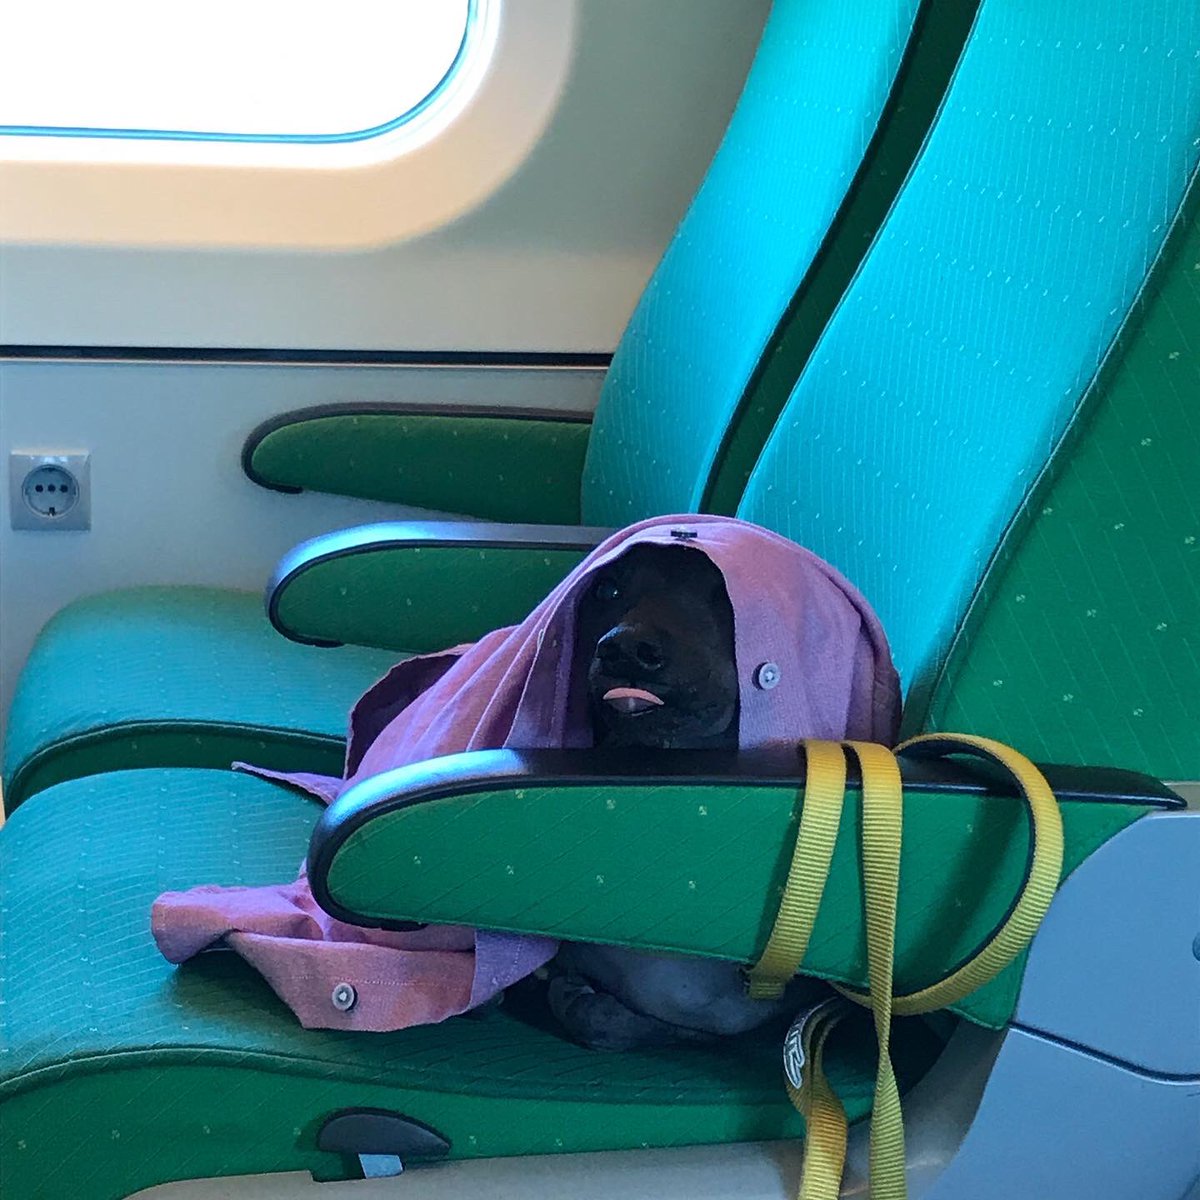 Voisko @VRmatkalla palkata jonku valokuvaajan kuvaamaan juniinsa kesäviikonloppuka ja toteuttaa ”Lemmikkivaunussa on tunnelmaa” valokuvanäyttelyn asemillaan? Ja lisäksi joukkoistaa pyytämällä matkustajia lähettämään parhaat lemmikkivaunukuvansa #lemmikkivaunu #vrmatkalla